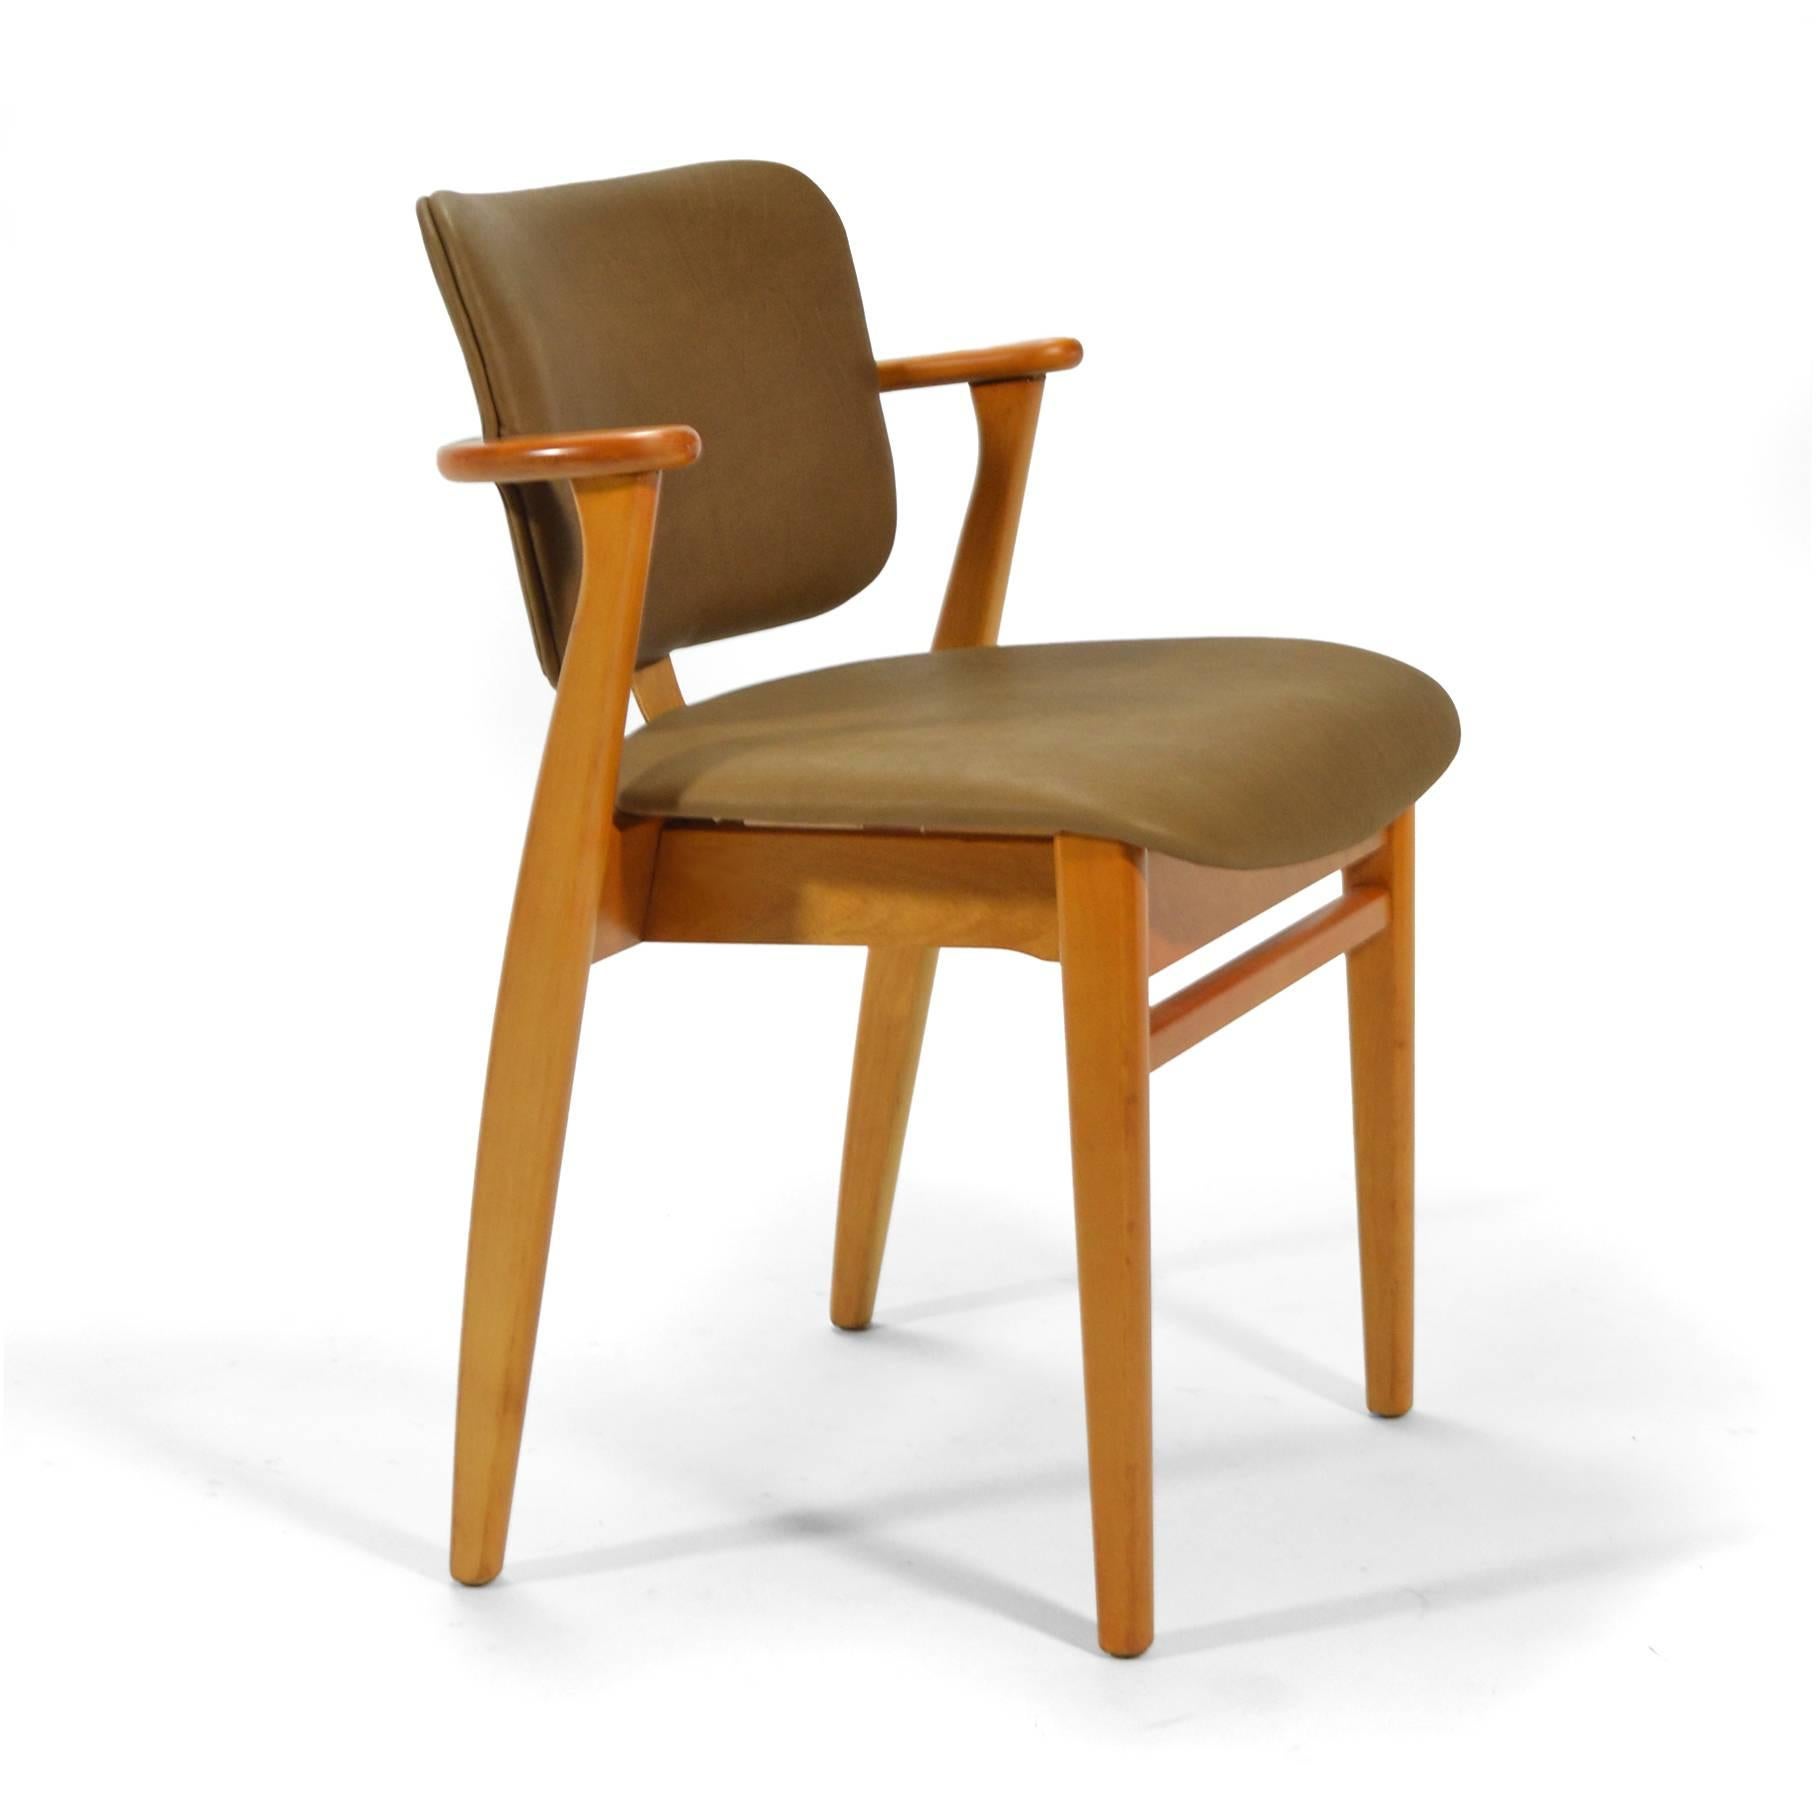 Magnifique création d'Ilmari Tapiovaara en 1946, la chaise Domus était proposée entièrement en bois, avec une assise tapissée ou une assise et un dossier tapissés. Ce bel exemple est doté d'une magnifique sellerie en cuir neuve. 

L'échelle du